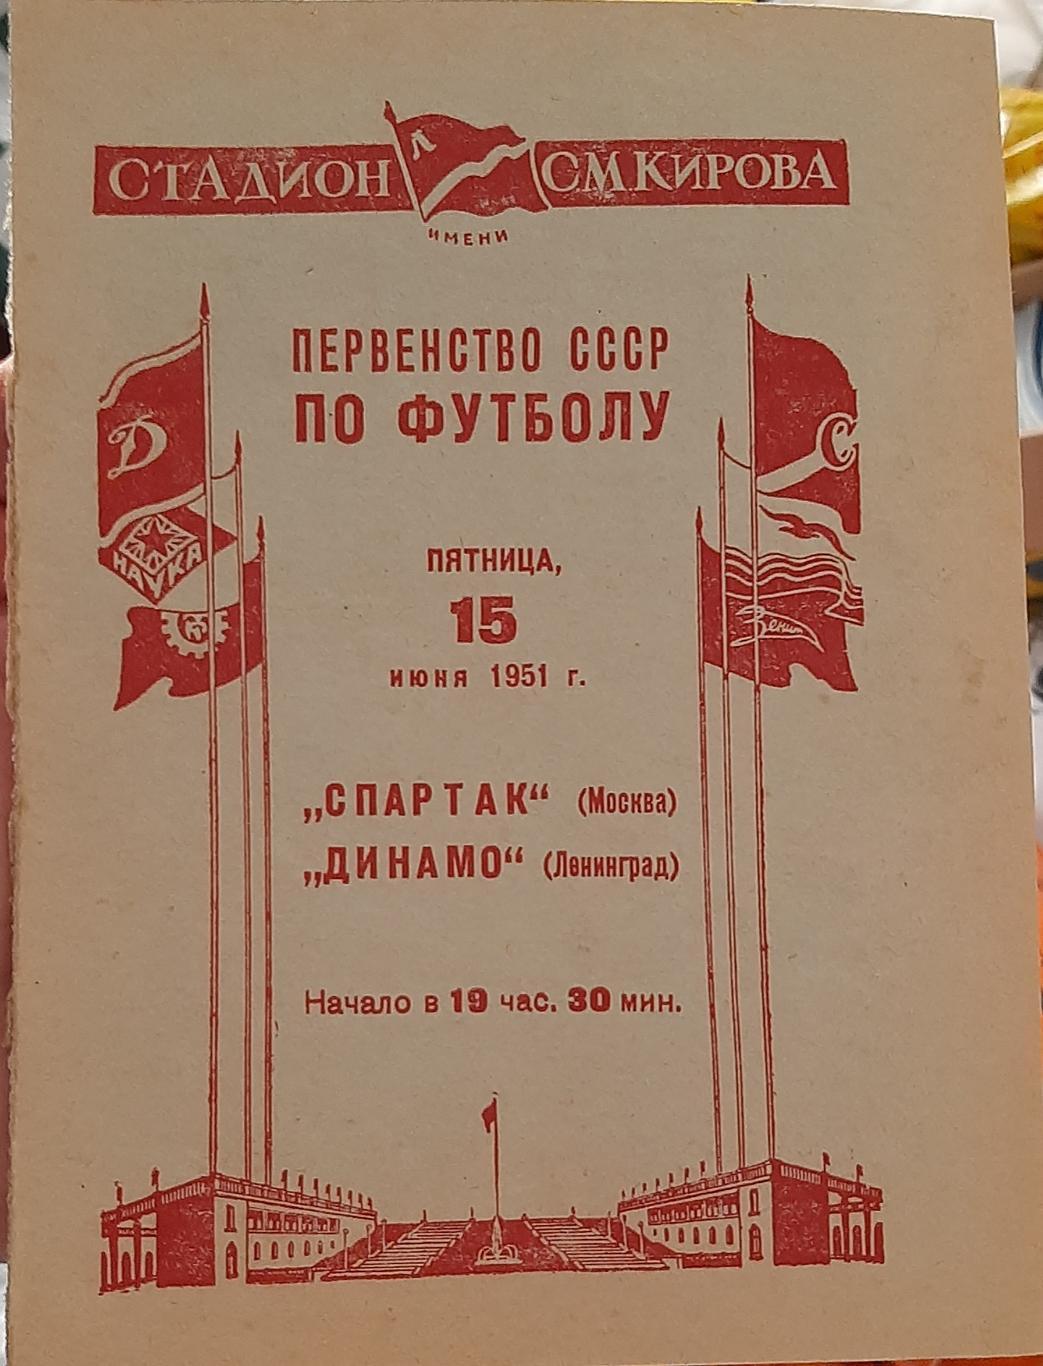 Динамо Ленинград — Спартак Москва 15.06.1951. Официальная программа